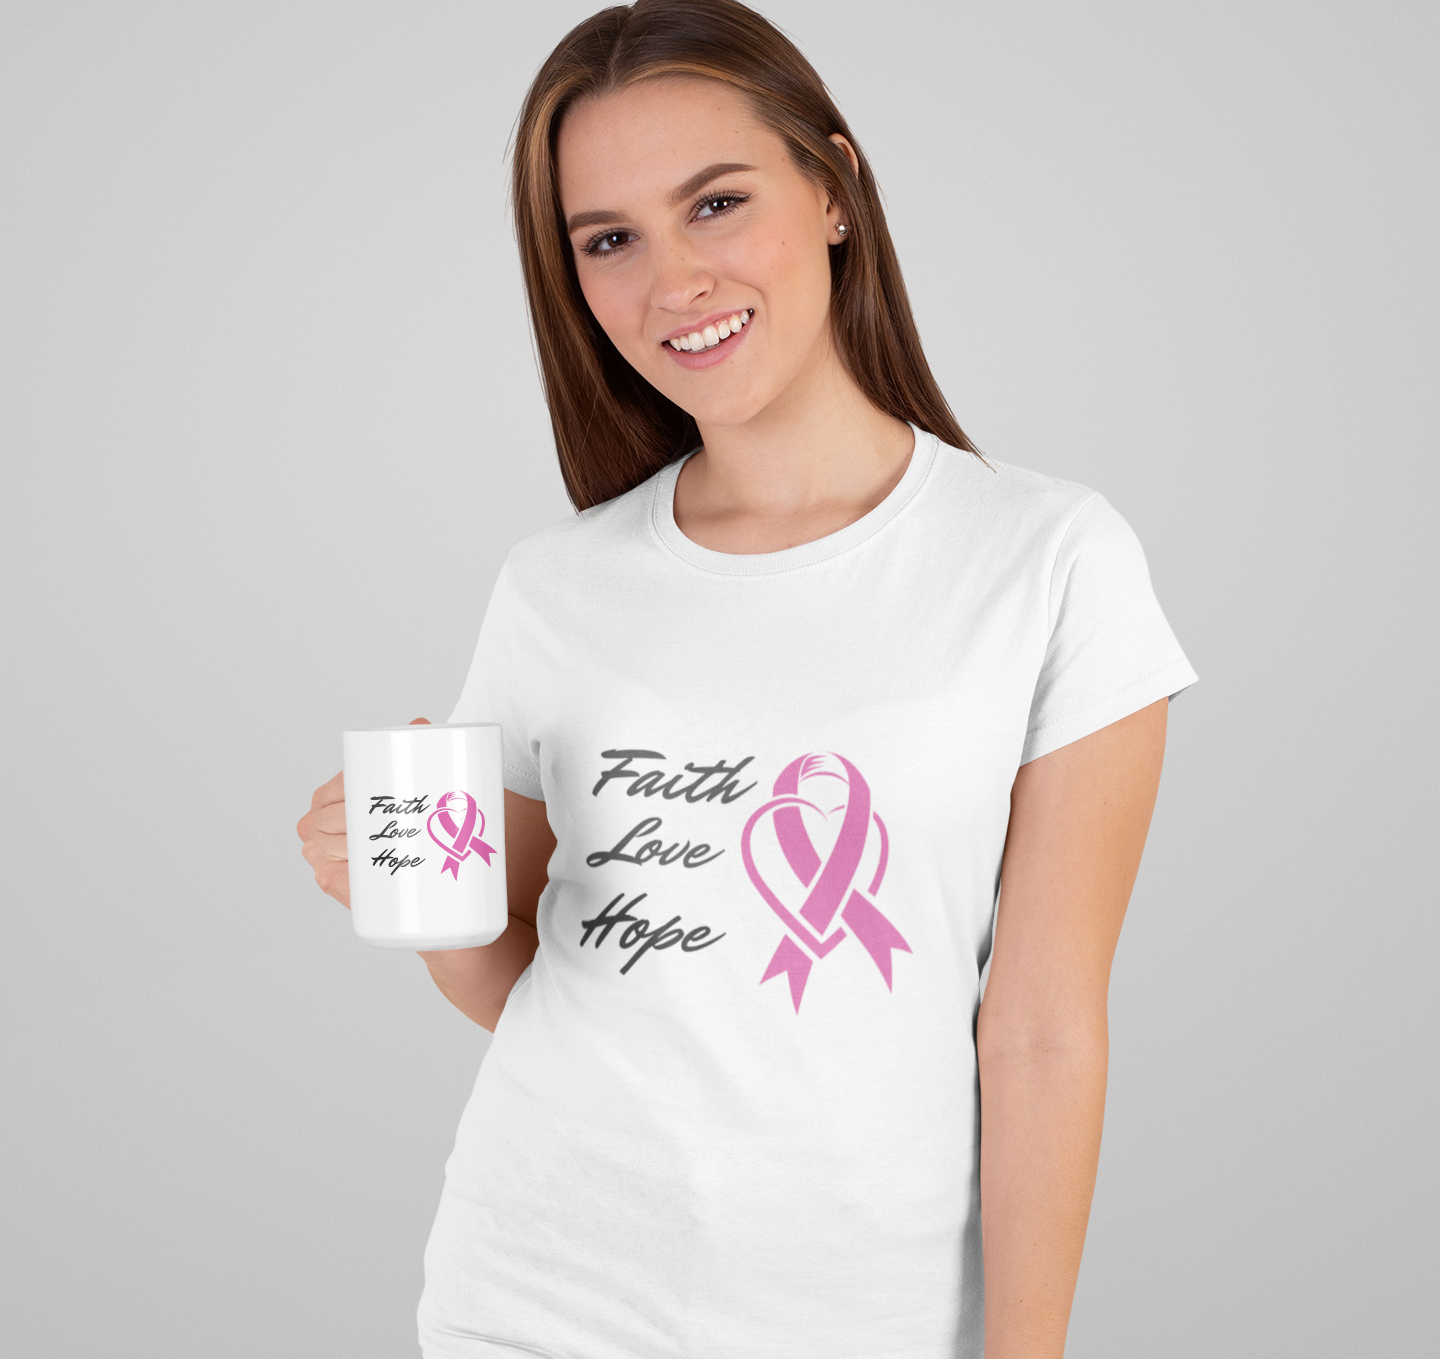 Faith Love Hope Pink Ribbon Theme T-Shirt